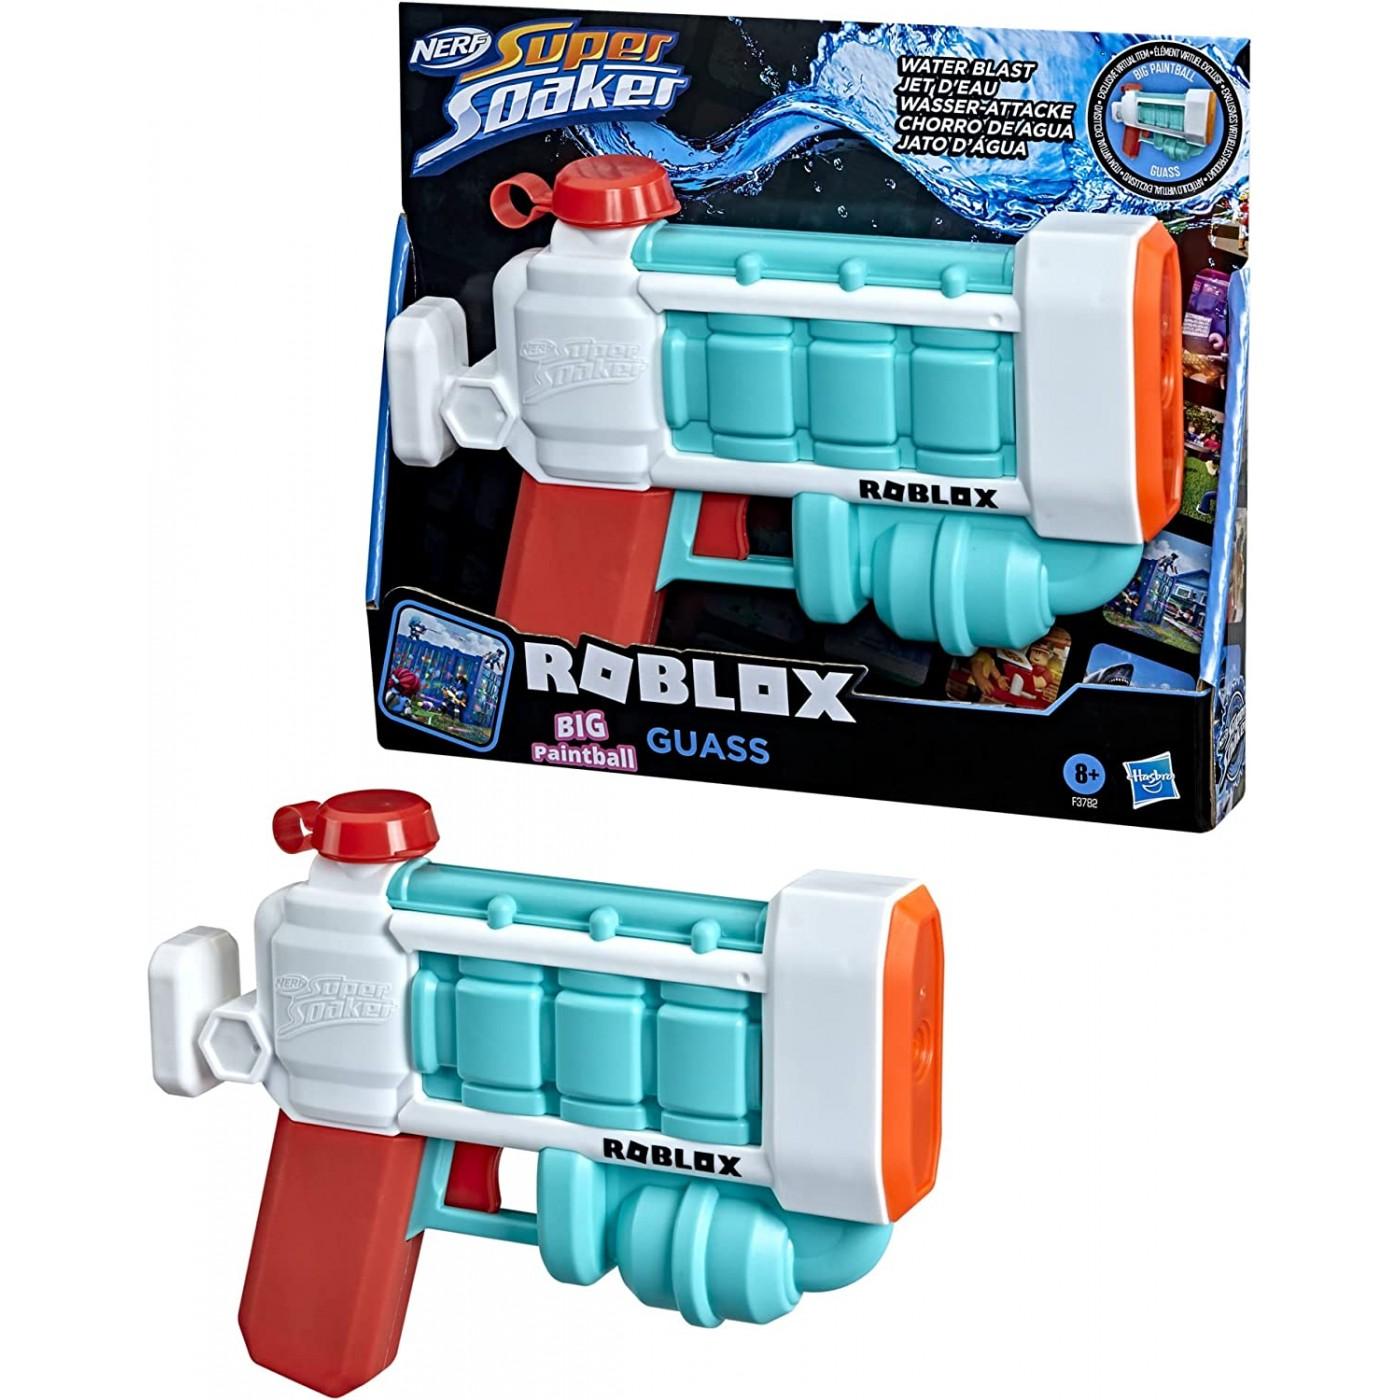 Selected image for HASBRO Dečija igračka pištolj na vodu Nerf Super Soaker Roblox Paintball blaster